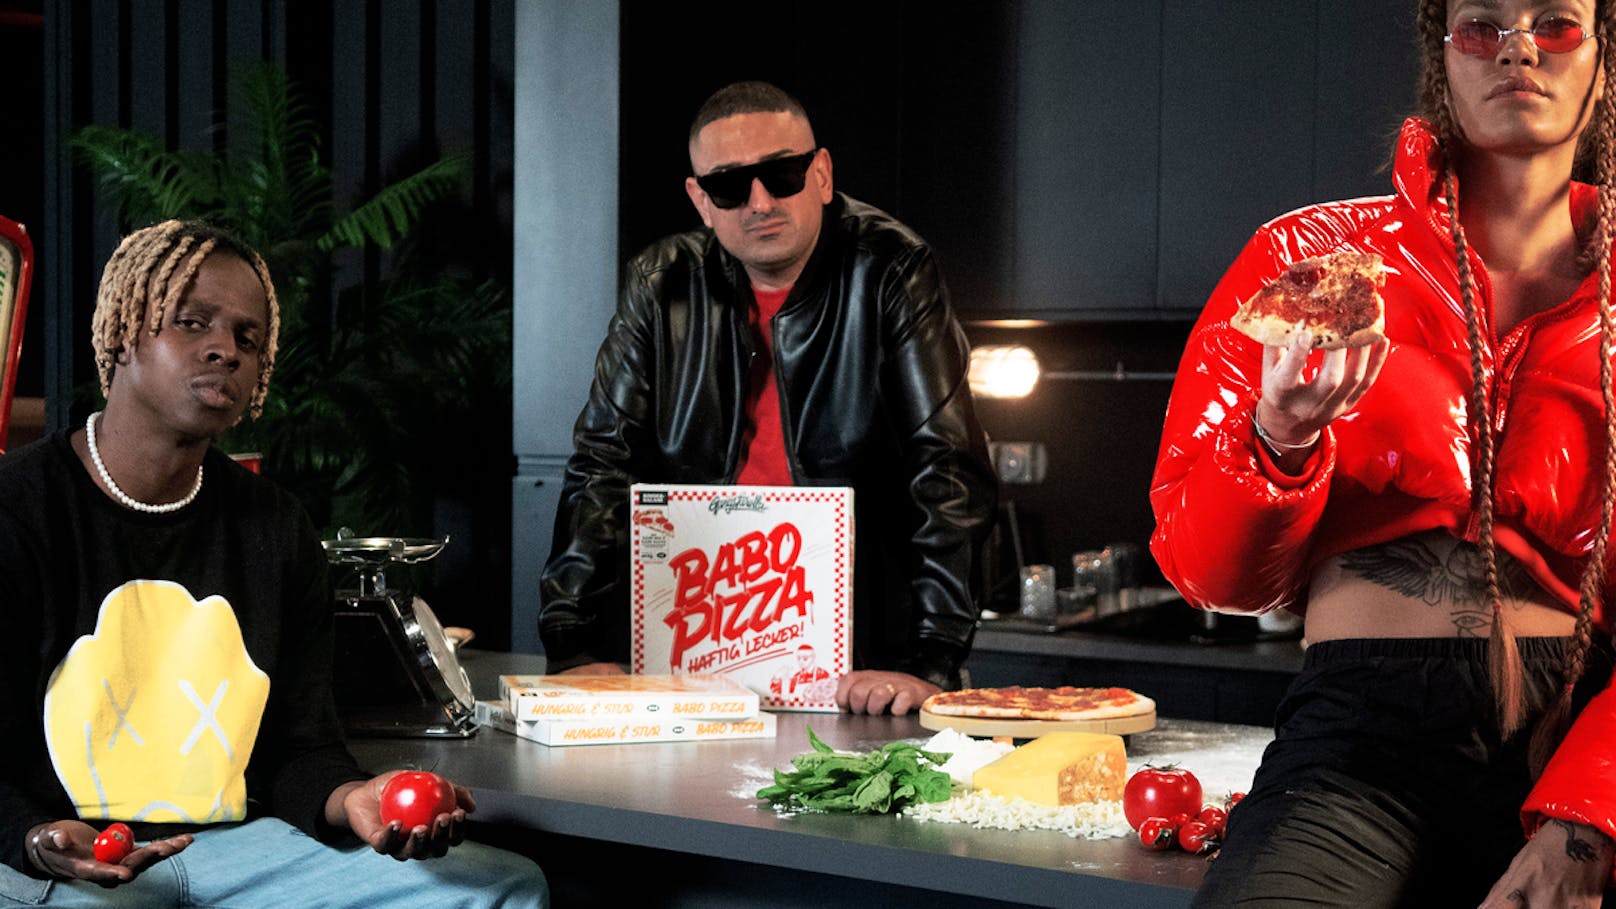 Deutsch-Rapper Haftbefehl bringt seine eigene "Babo-Pizza" auf den Markt.